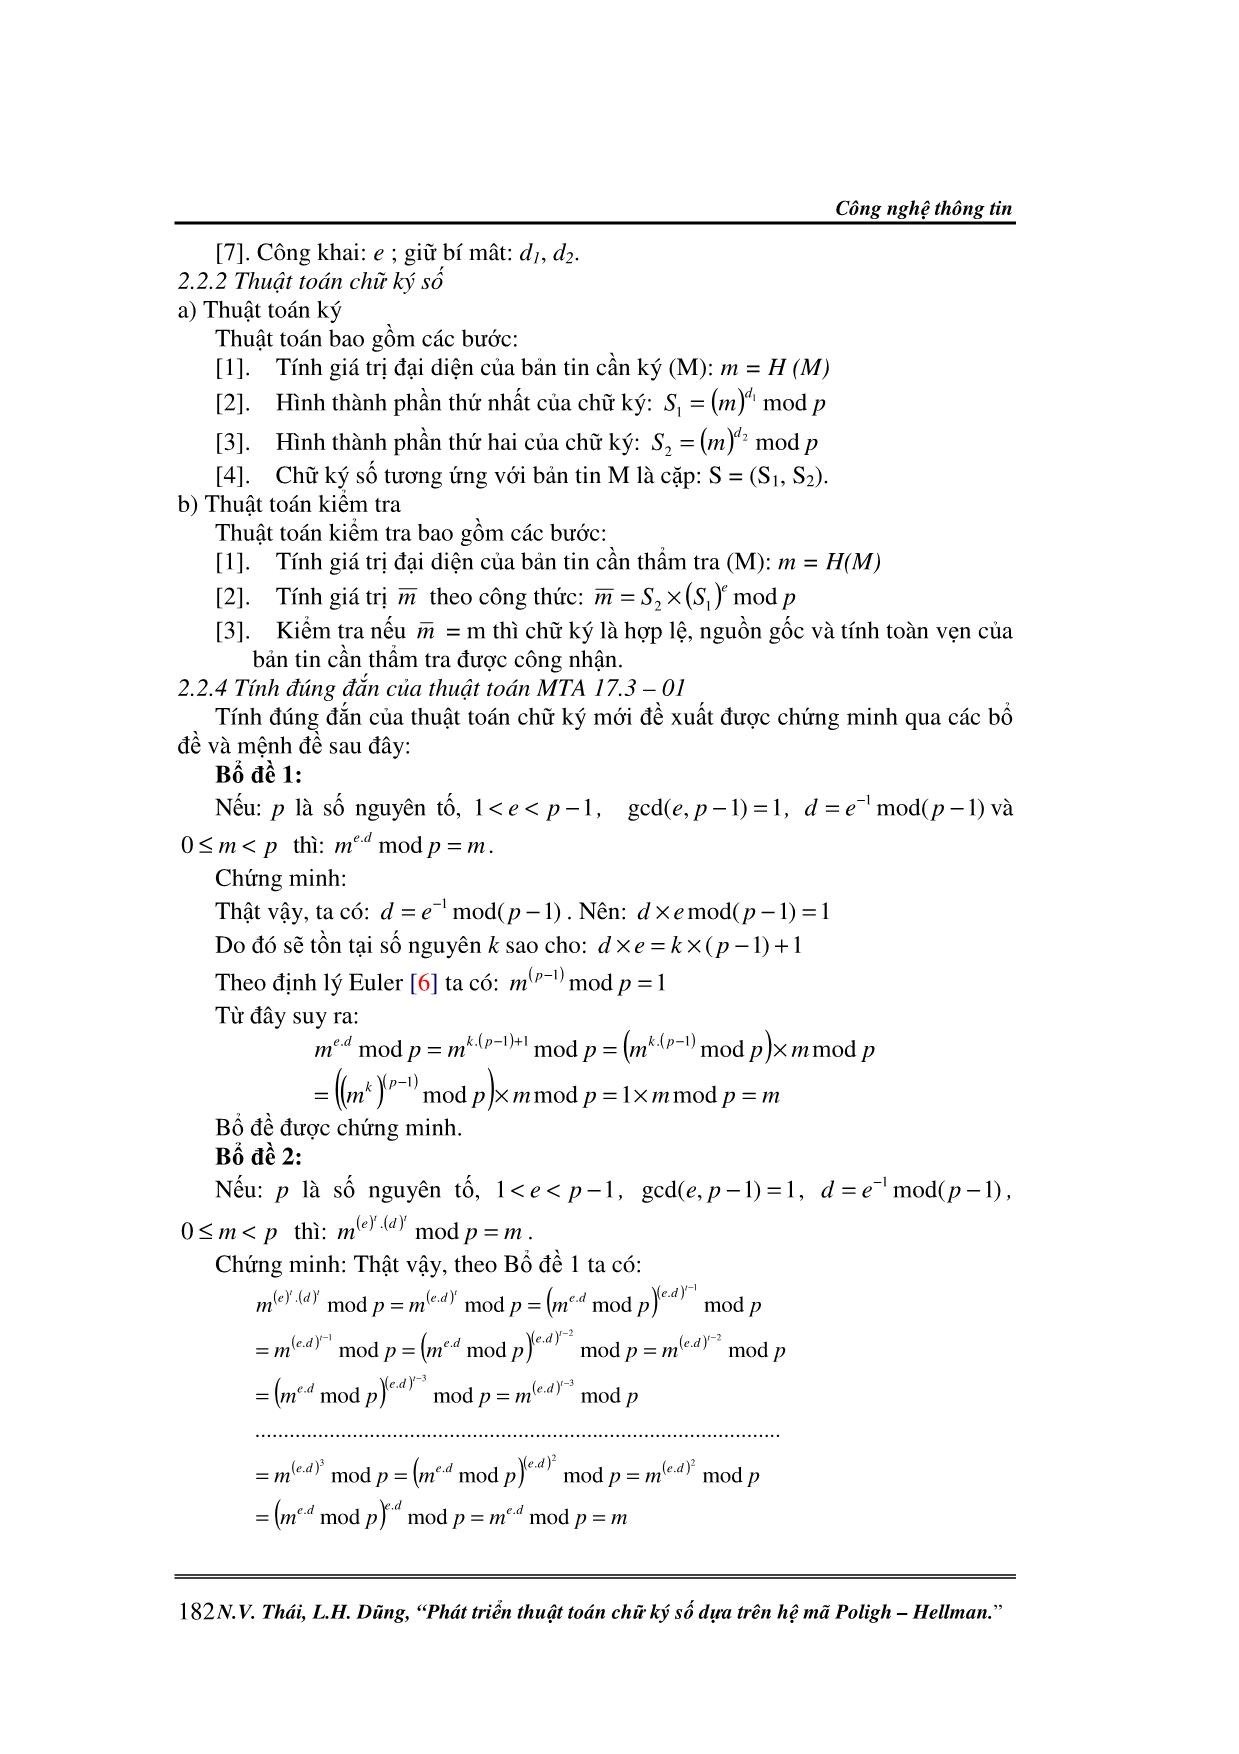 Phát triển thuật toán chữ ký số dựa trên hệ mã Poligh - Hellman trang 3